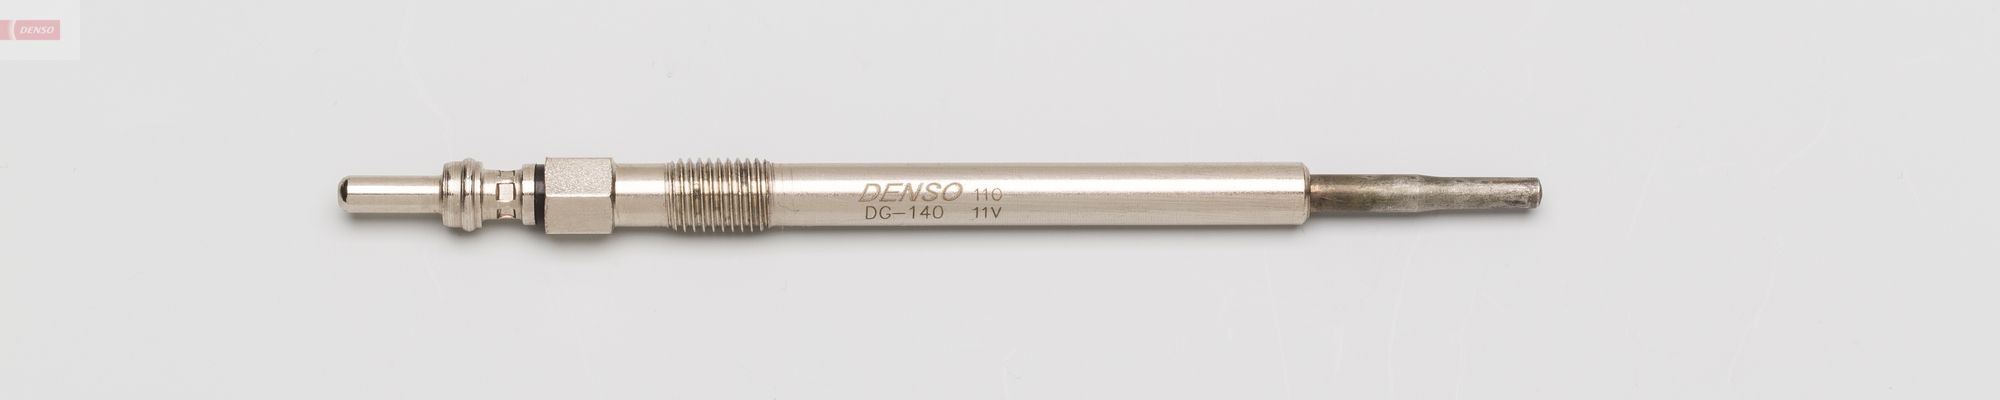 DG-140 DENSO Glow plug VOLVO 11V M8x1.0, Metal glow plug, 126 mm, 8 Nm